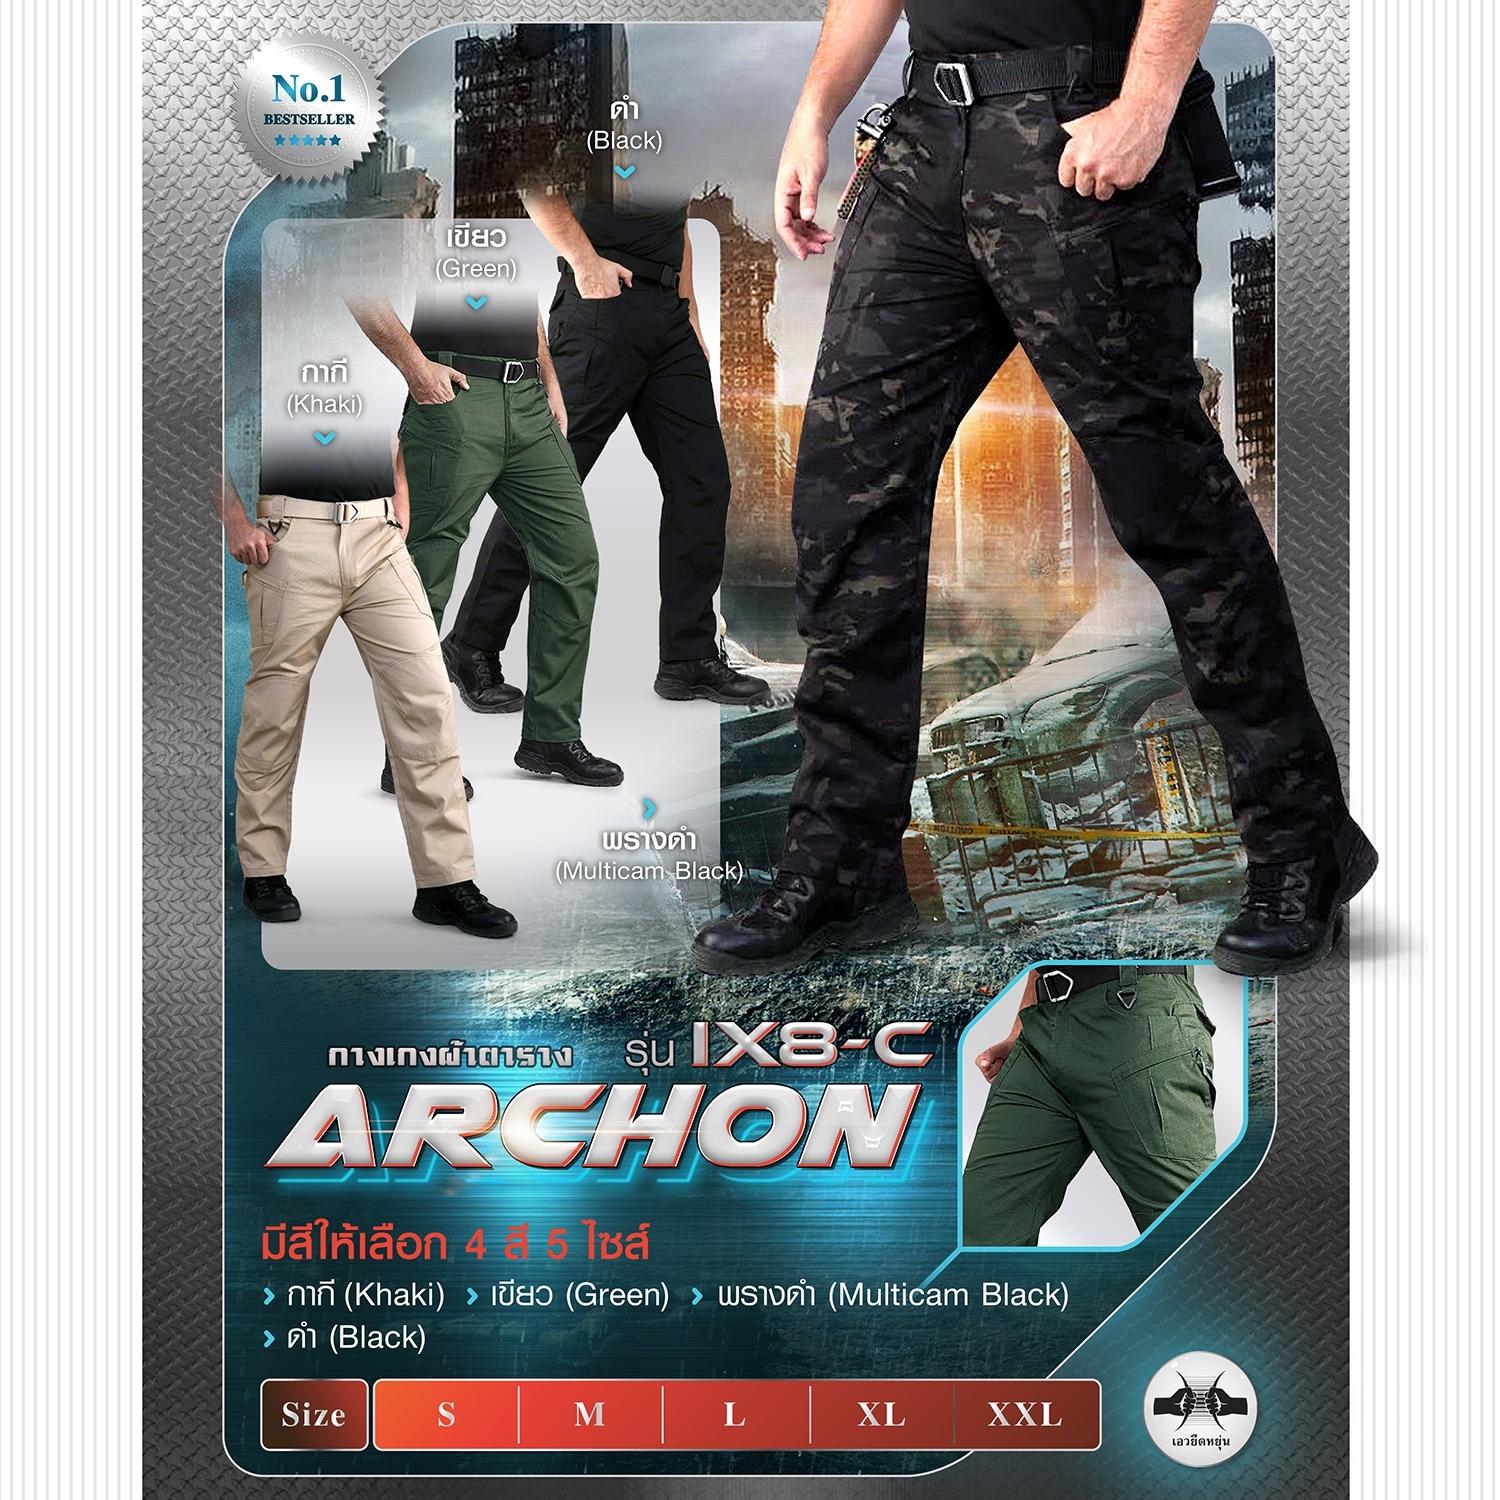 กางเกง Archon รุ่น IX8C ผ้าตาราง กางเกงที่มีน้ำหนักเบา กางเกงคาร์โก้ กางเกงคาร์โก้ลำลองผู้ชาย BY Tactical unit ผ้าตาราง กางเกงที่มีน้ำหนักเบา กางเกงคาร์โก้ กางเกงคาร์โก้ลำลองผู้ชาย BY Tactical unit